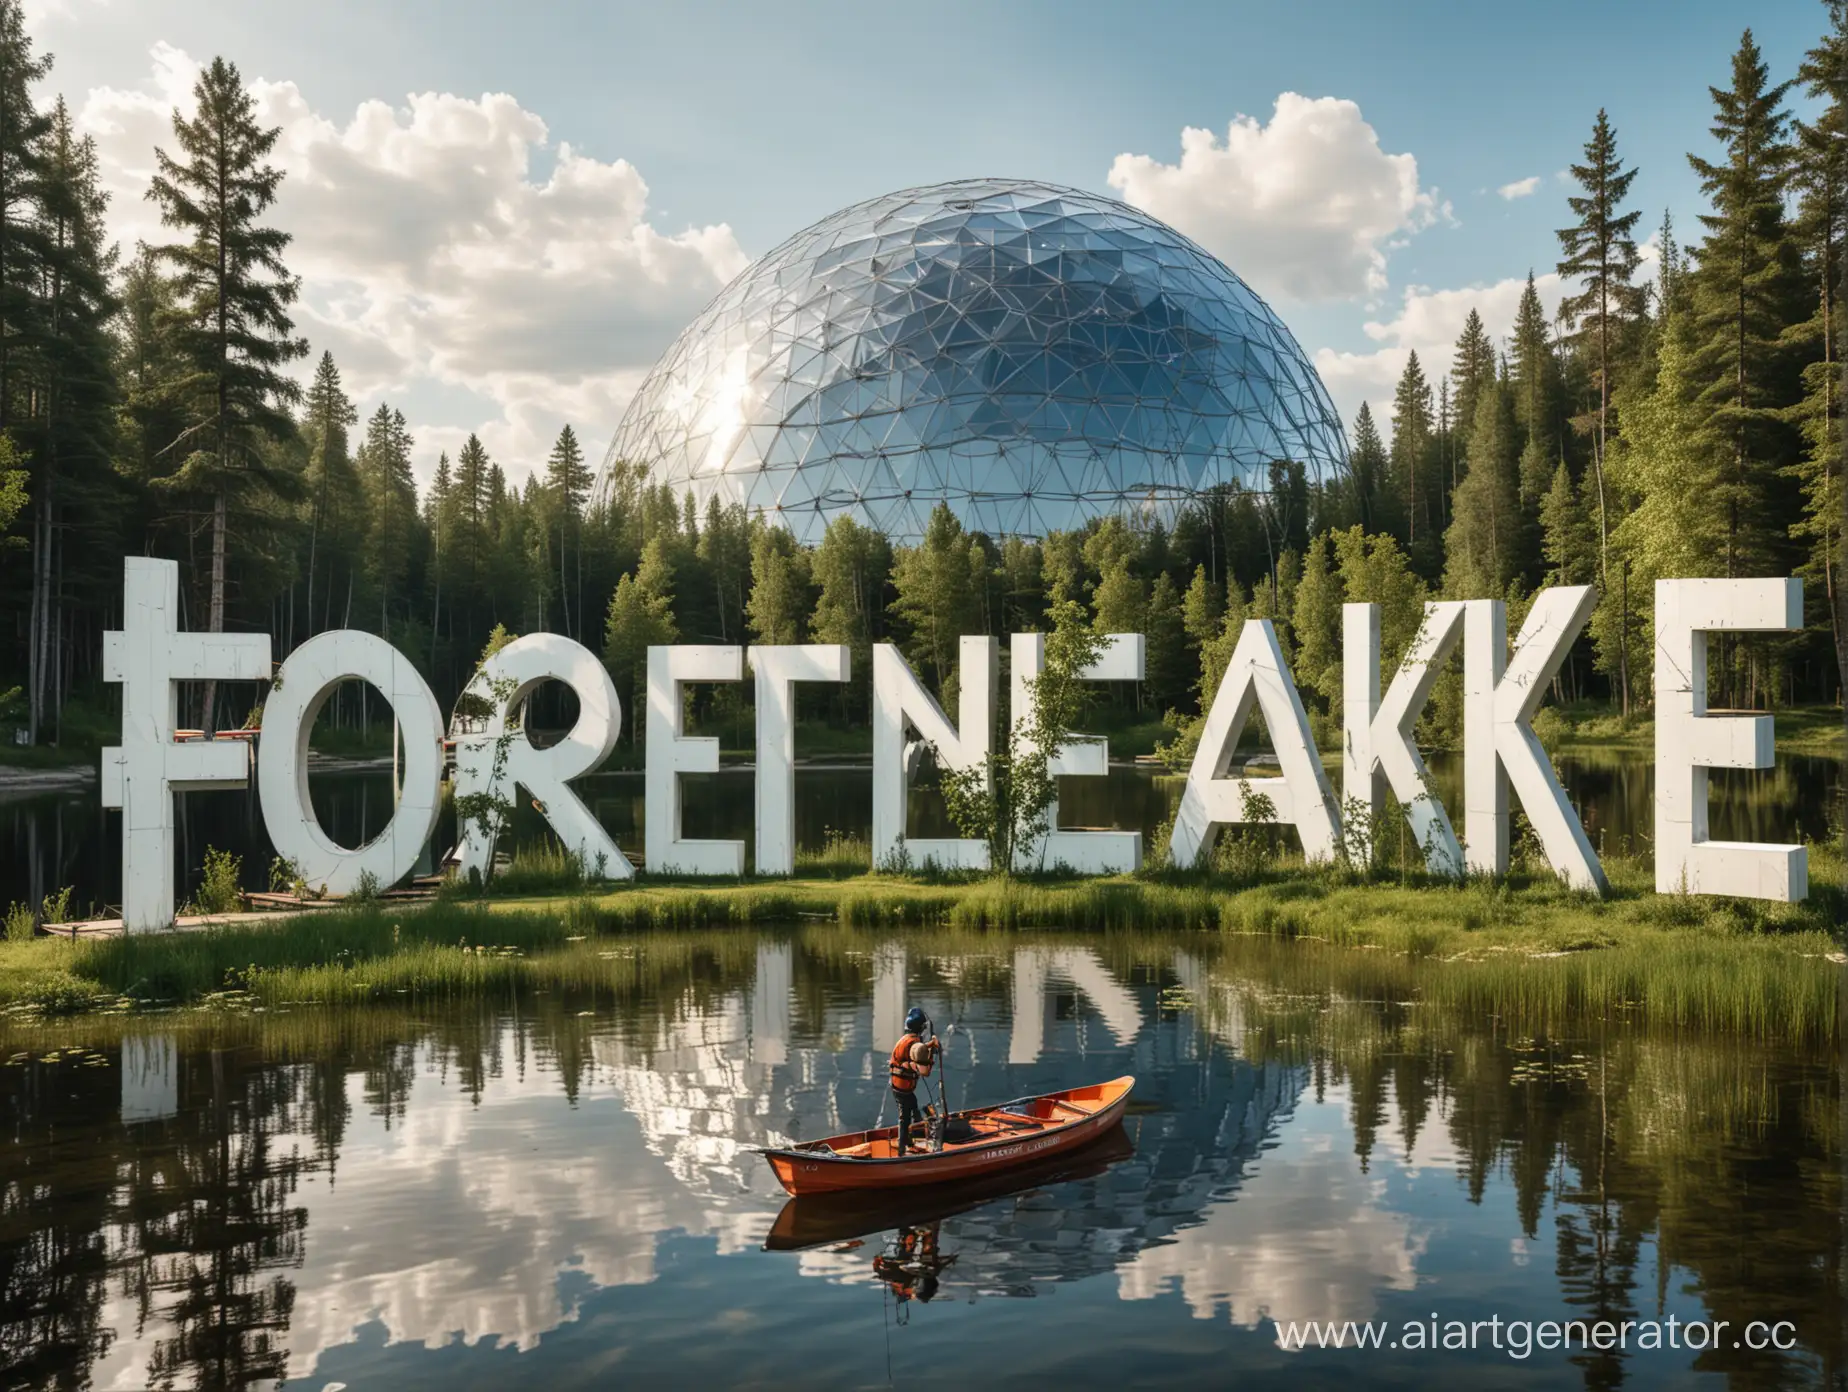 Надпись Лесное озеро на русском языке, на заднем фоне озеро, деревья, Геокупол, катер челевоке на вейборде